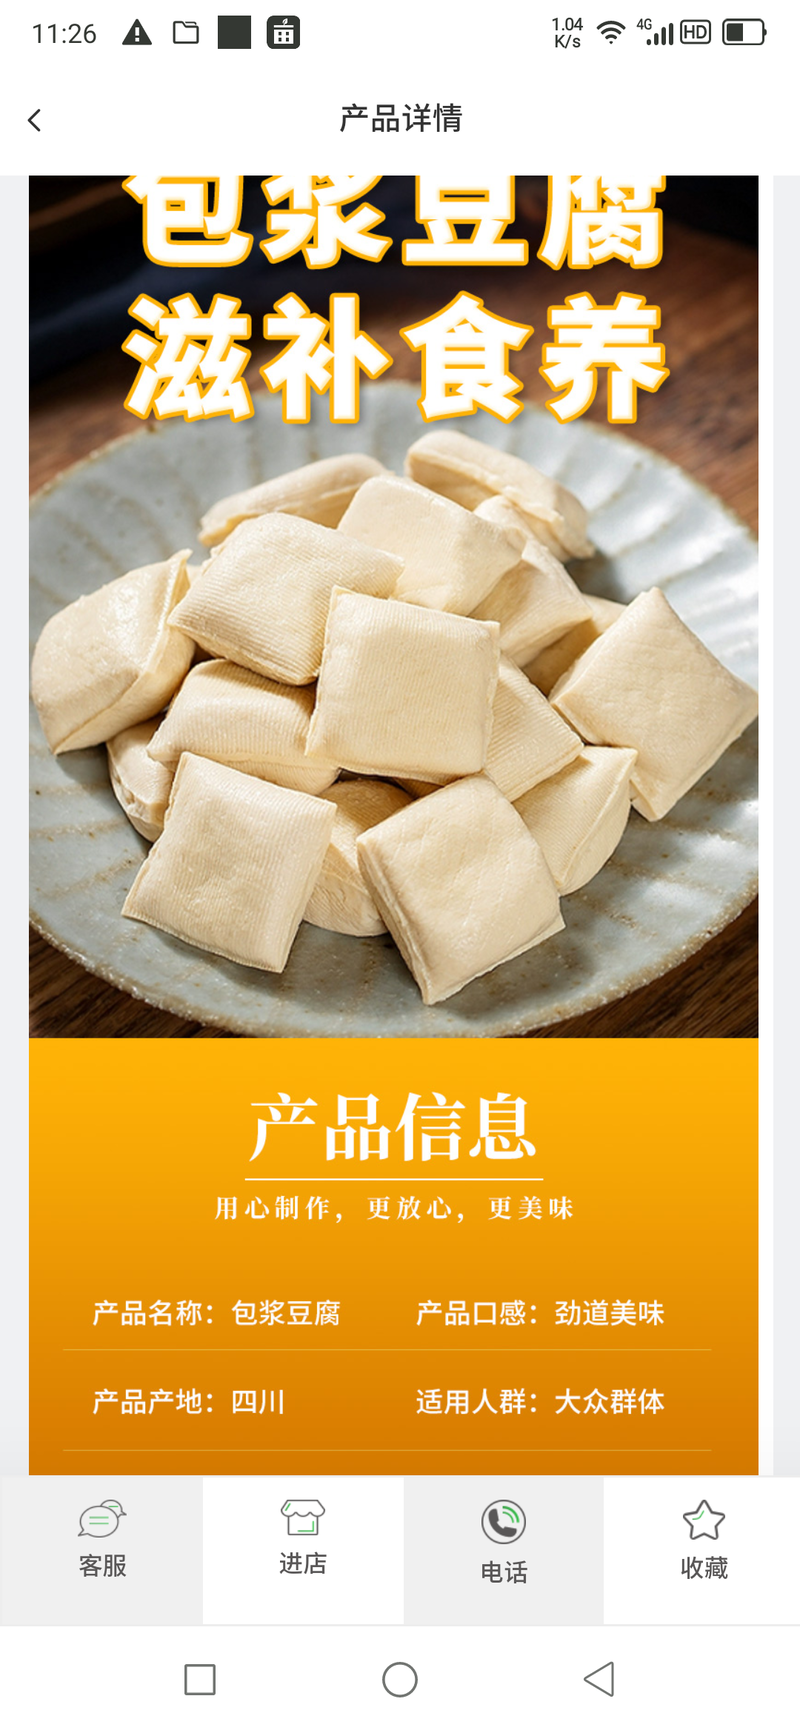 包浆豆腐黄金豆腐木棉豆腐千叶豆腐黄金丝